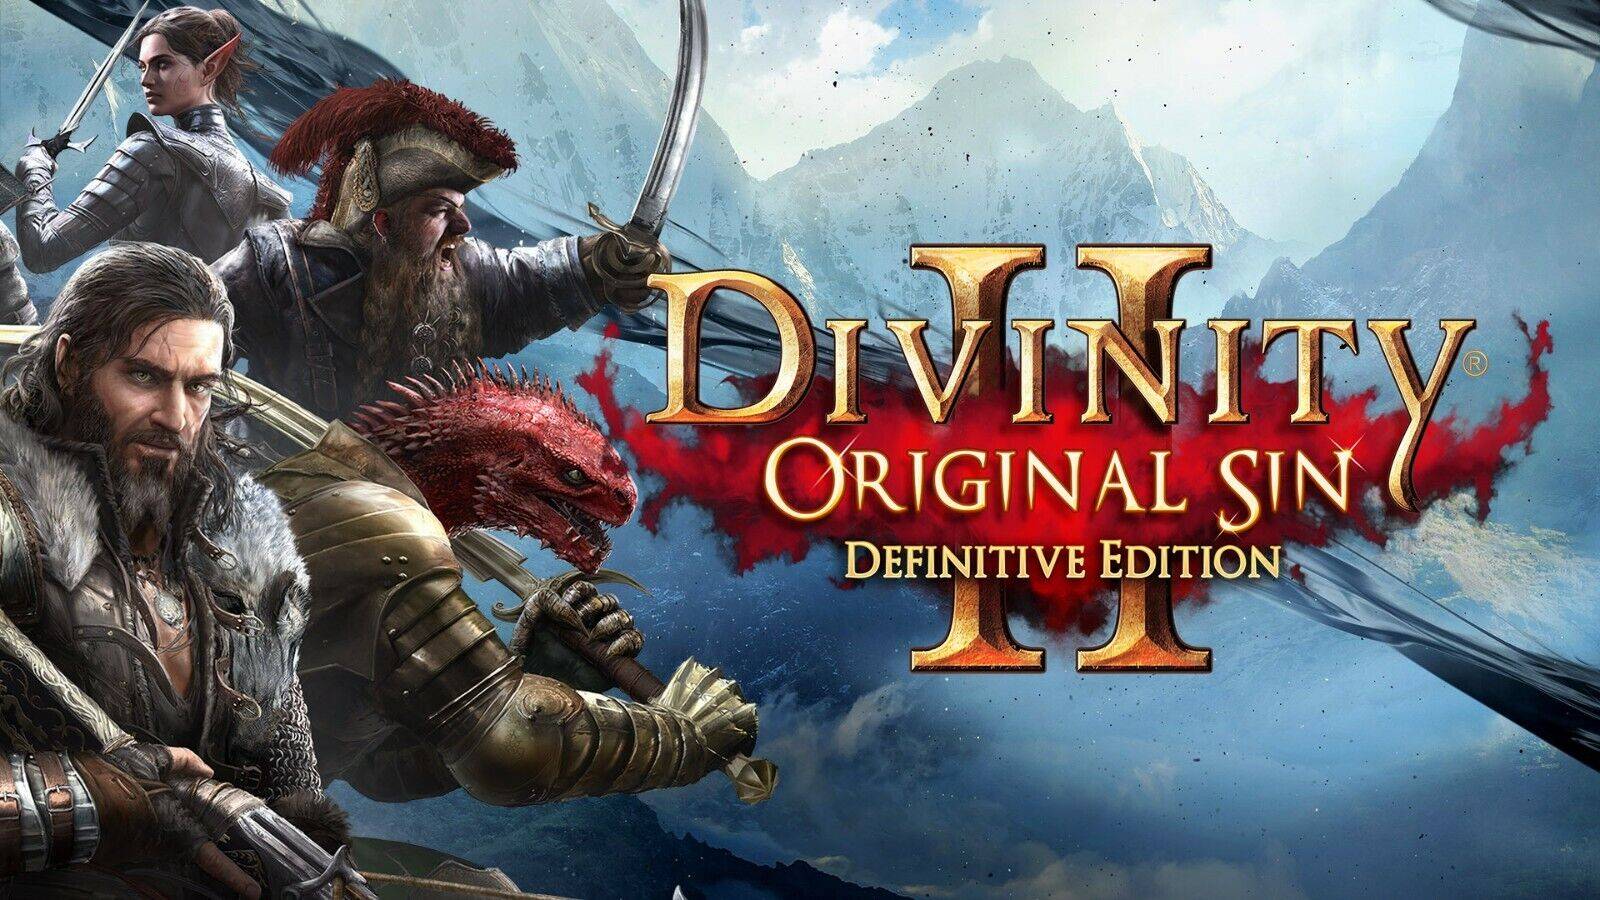 Divinity: Original Sin 2. Это очень хорошая игра